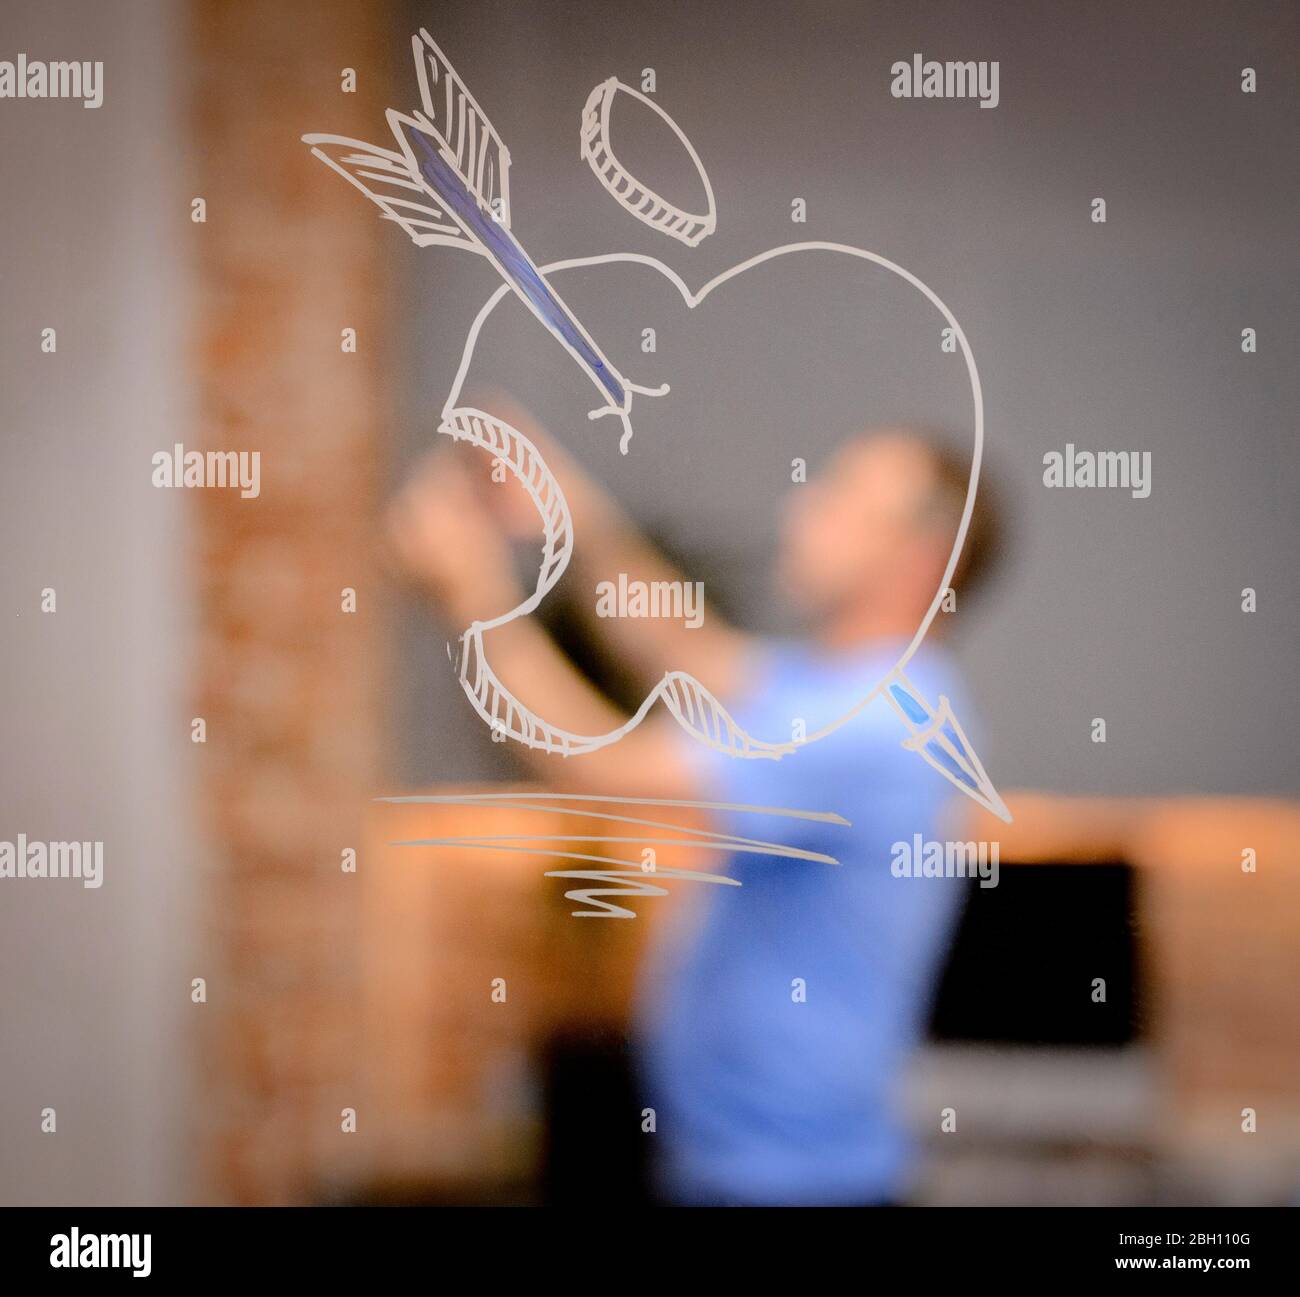 Une pomme avec une flèche dessinée à travers elle peinte sur une fenêtre. À distance, un homme utilise un iPad ou un téléphone pour prendre une photo. Banque D'Images